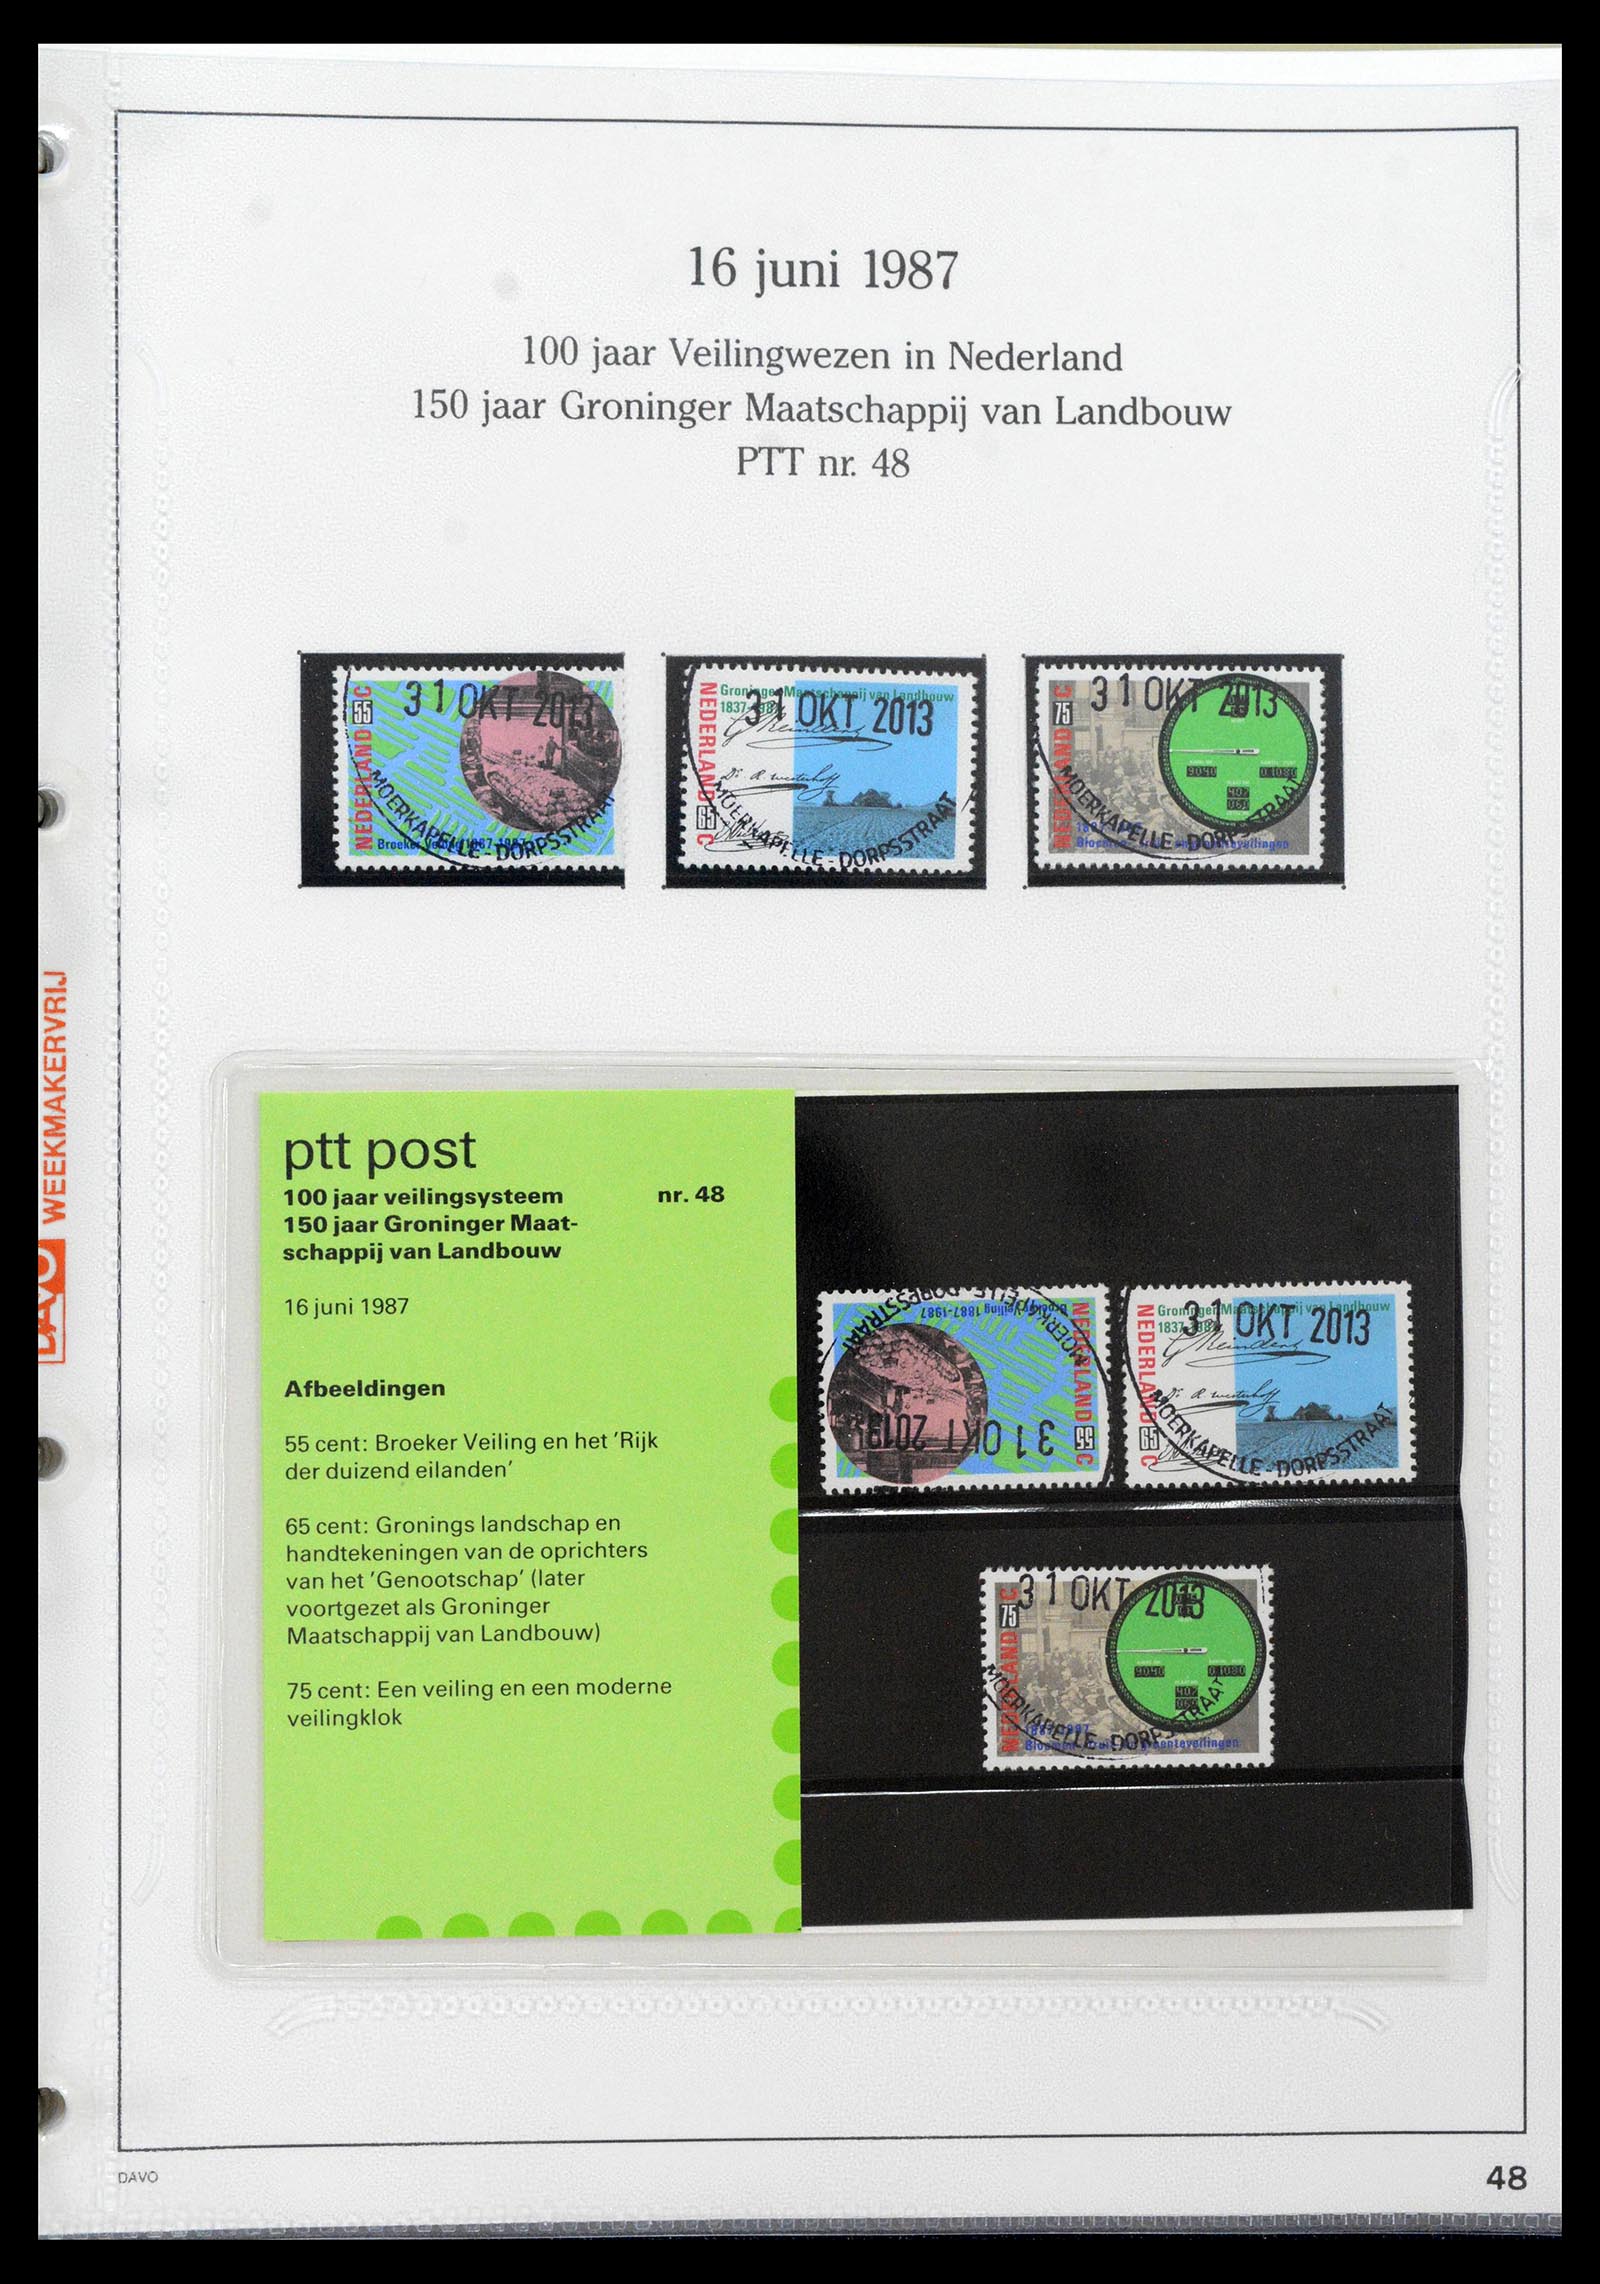 39121 0048 - Stamp collection 39121 Netherlands presentationpacks 1982-2001.